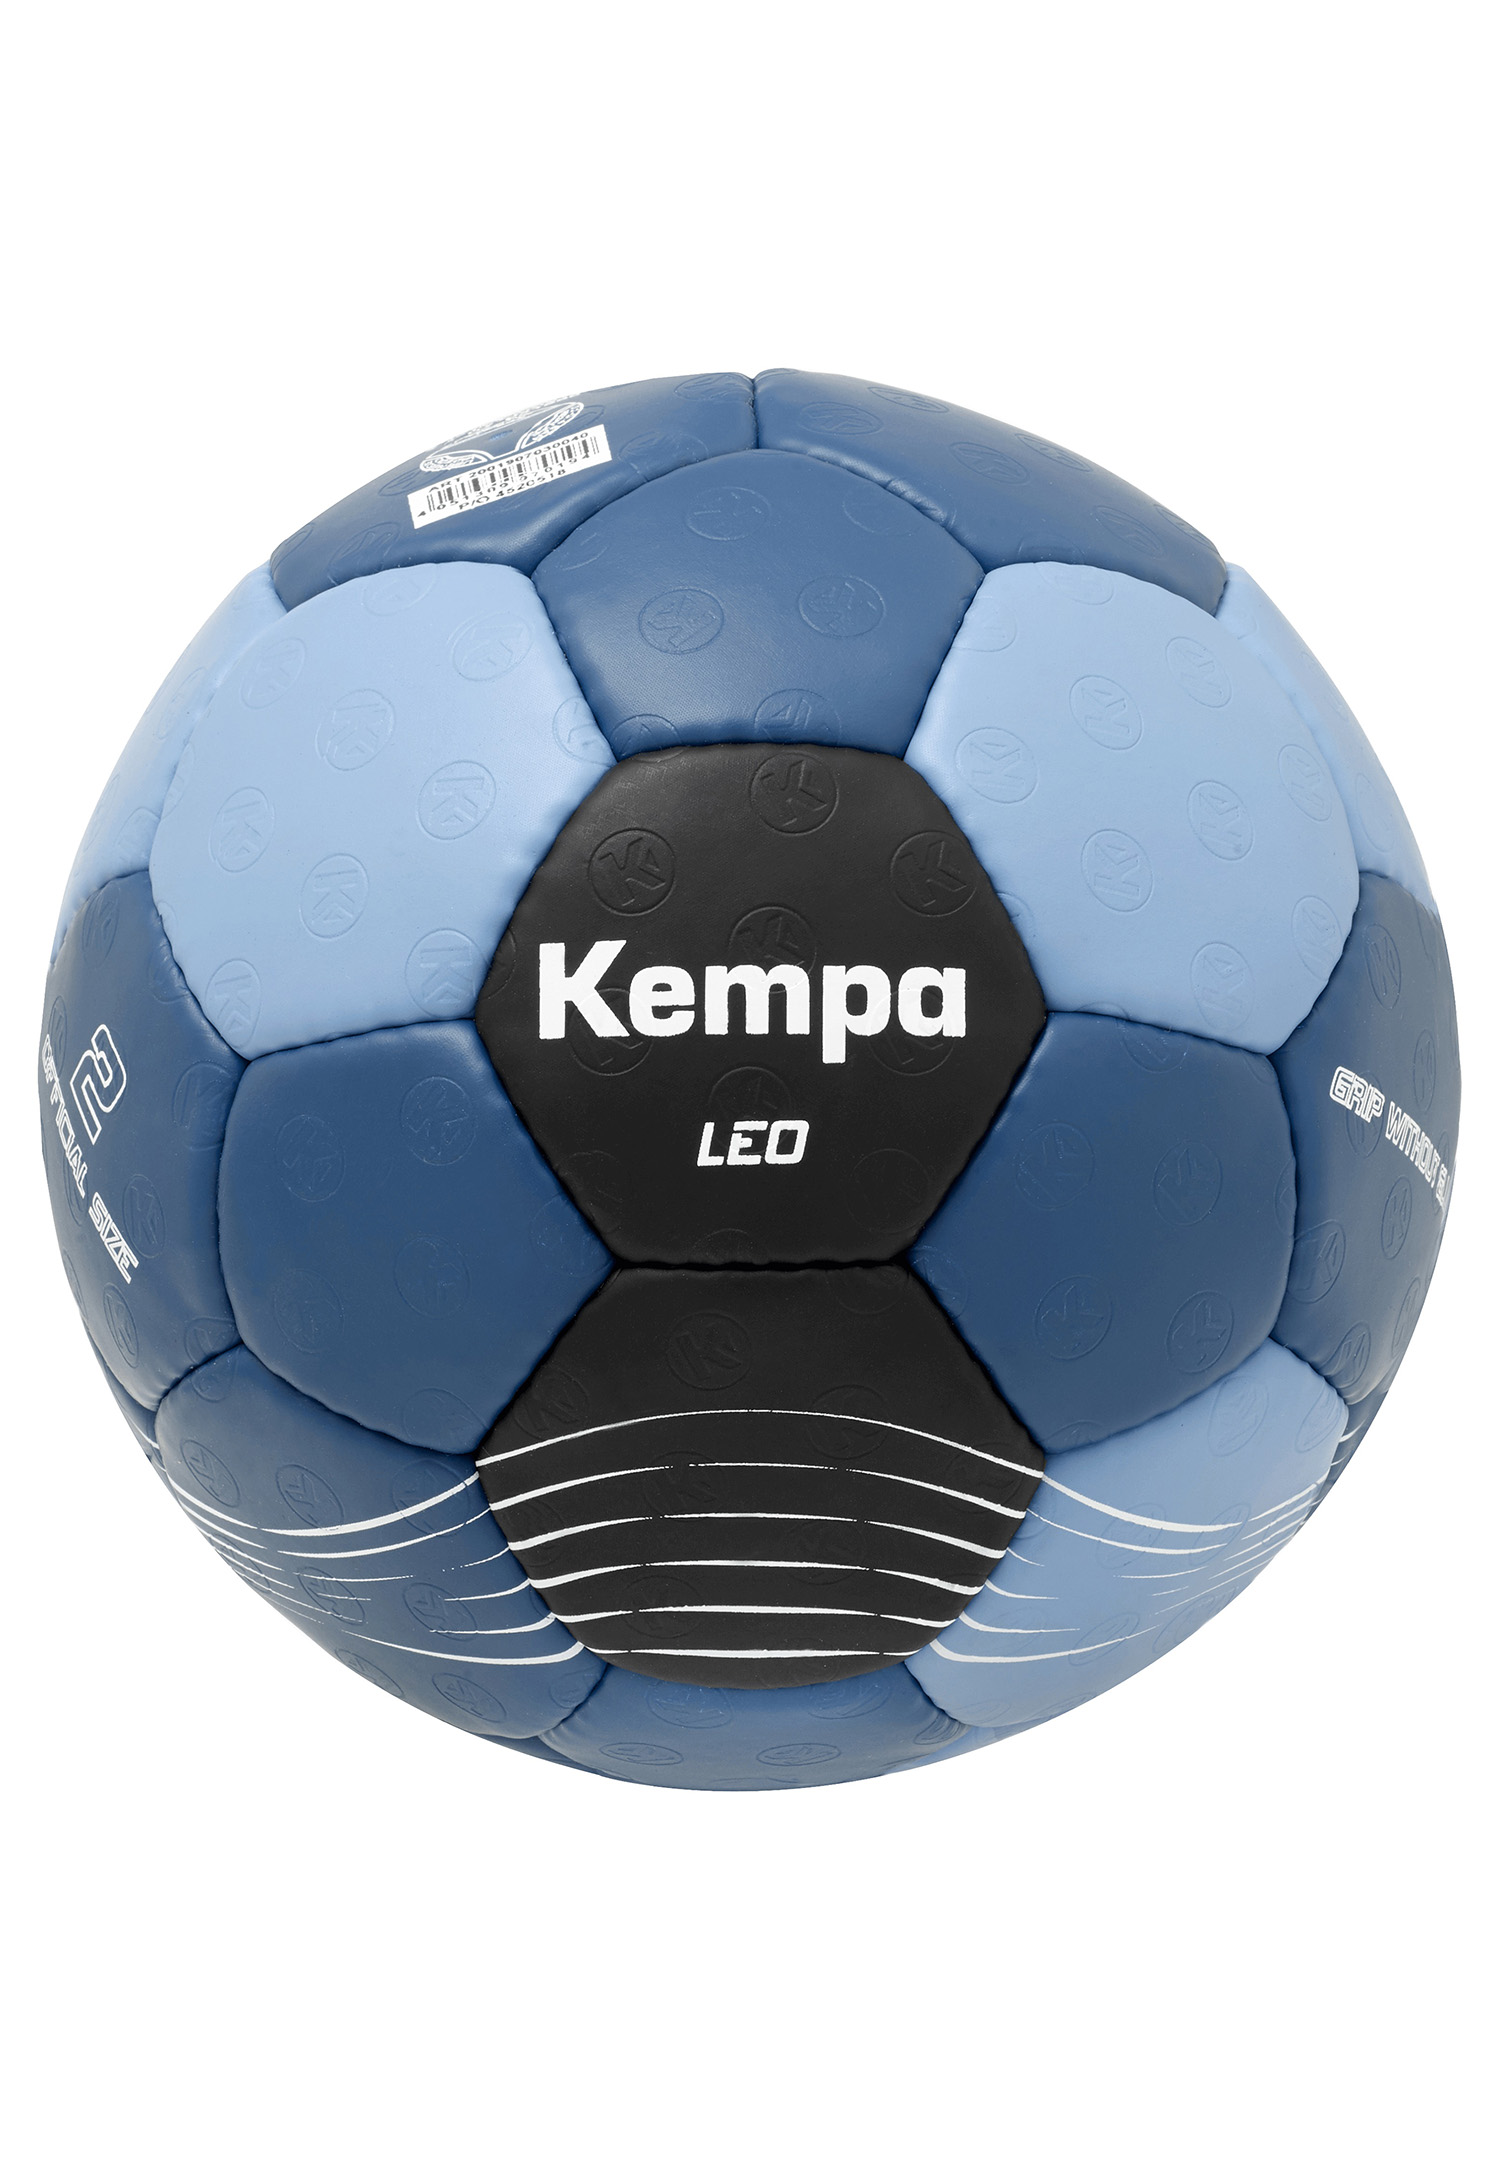 Kempa Handball Leo Size 0 200190703 blue/black